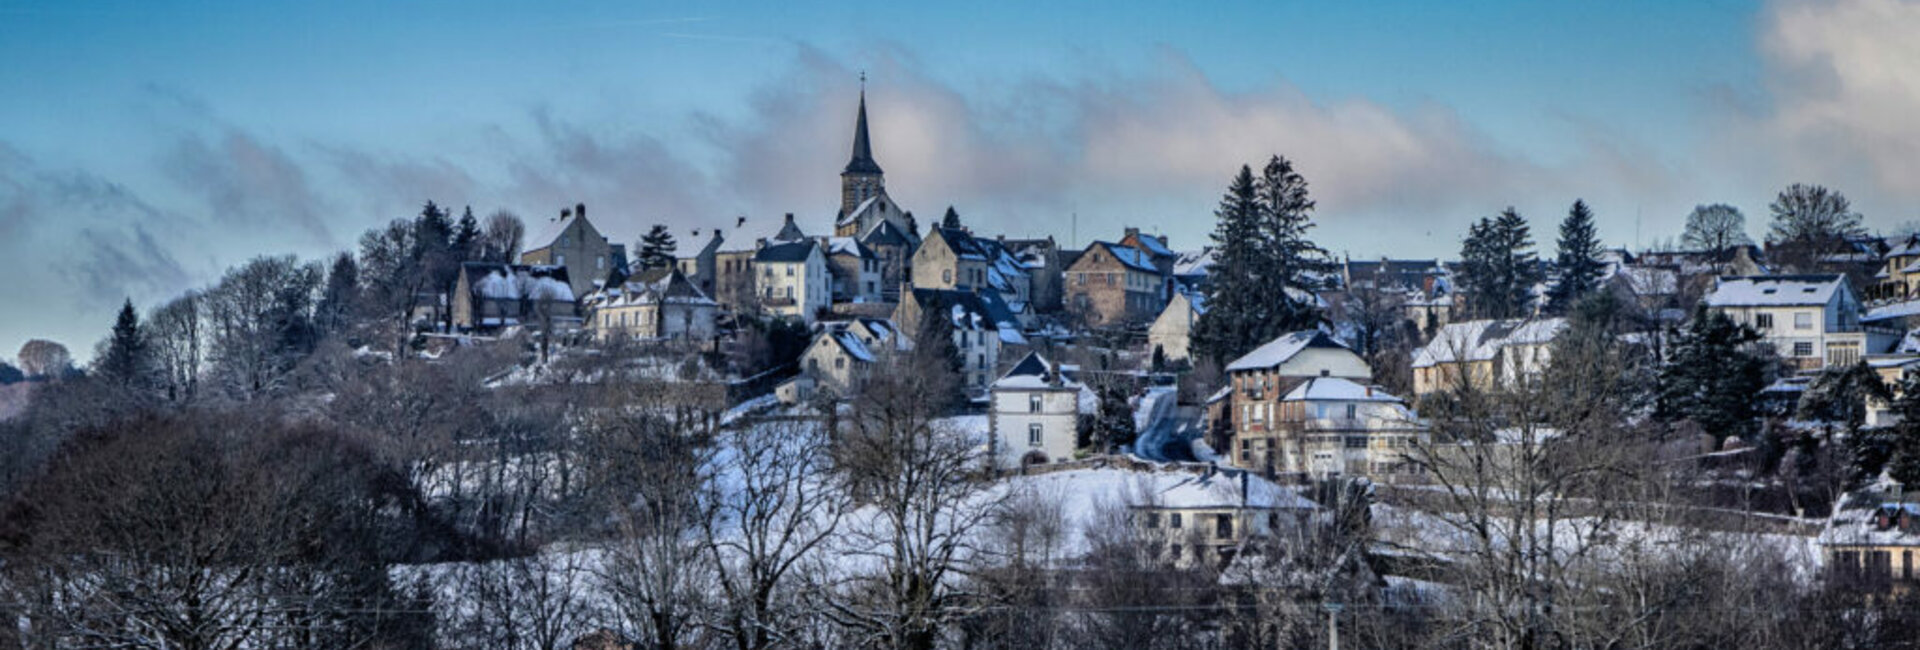 Le patrimoine de Saint-Sauves d'Auvergne (63) Puy-de-dôme